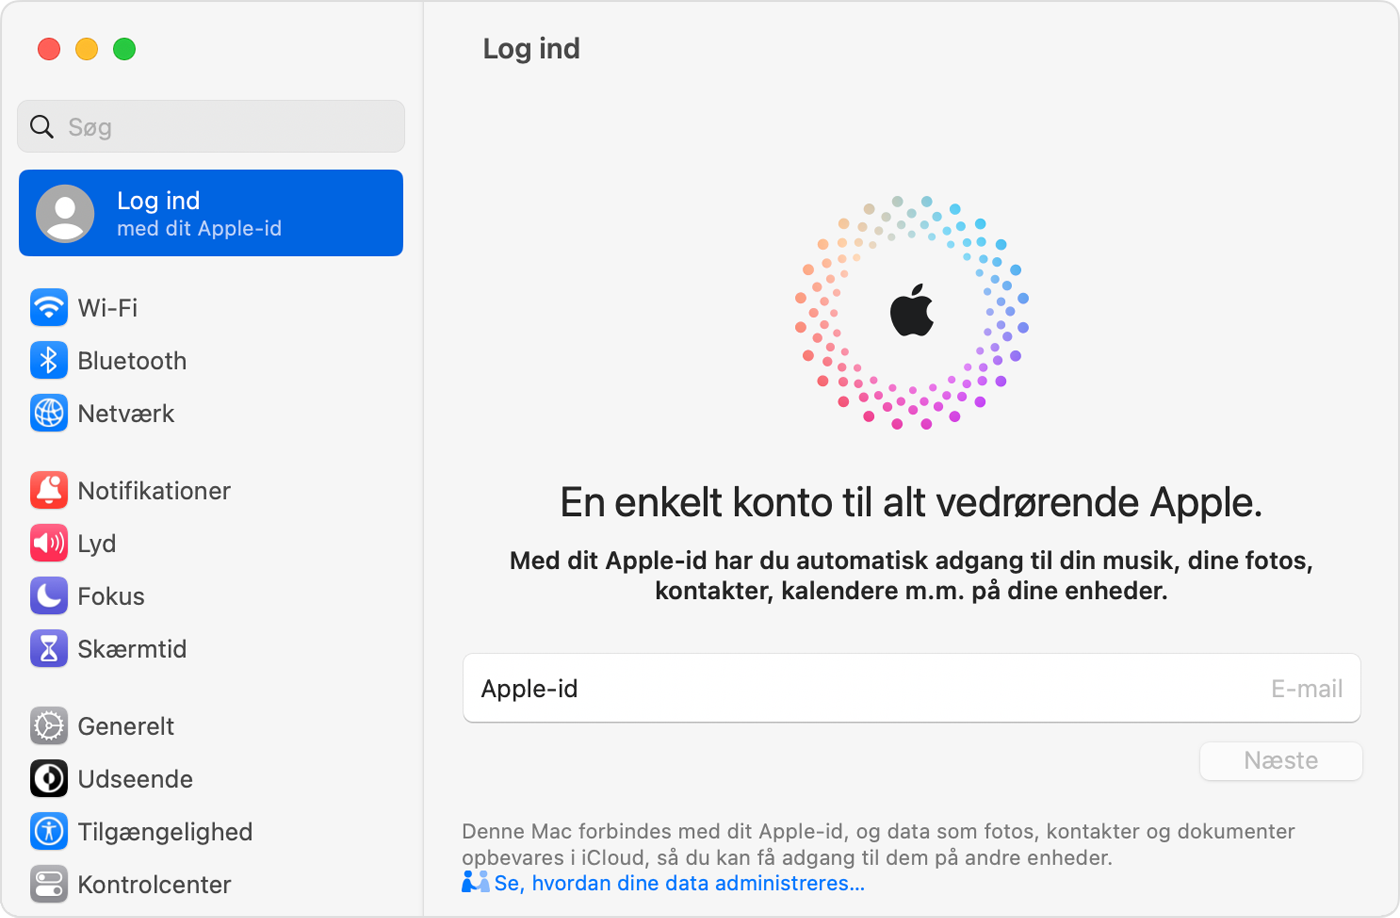 Aske loft Bebrejde Log ind med dit Apple-id - Apple-support (DK)